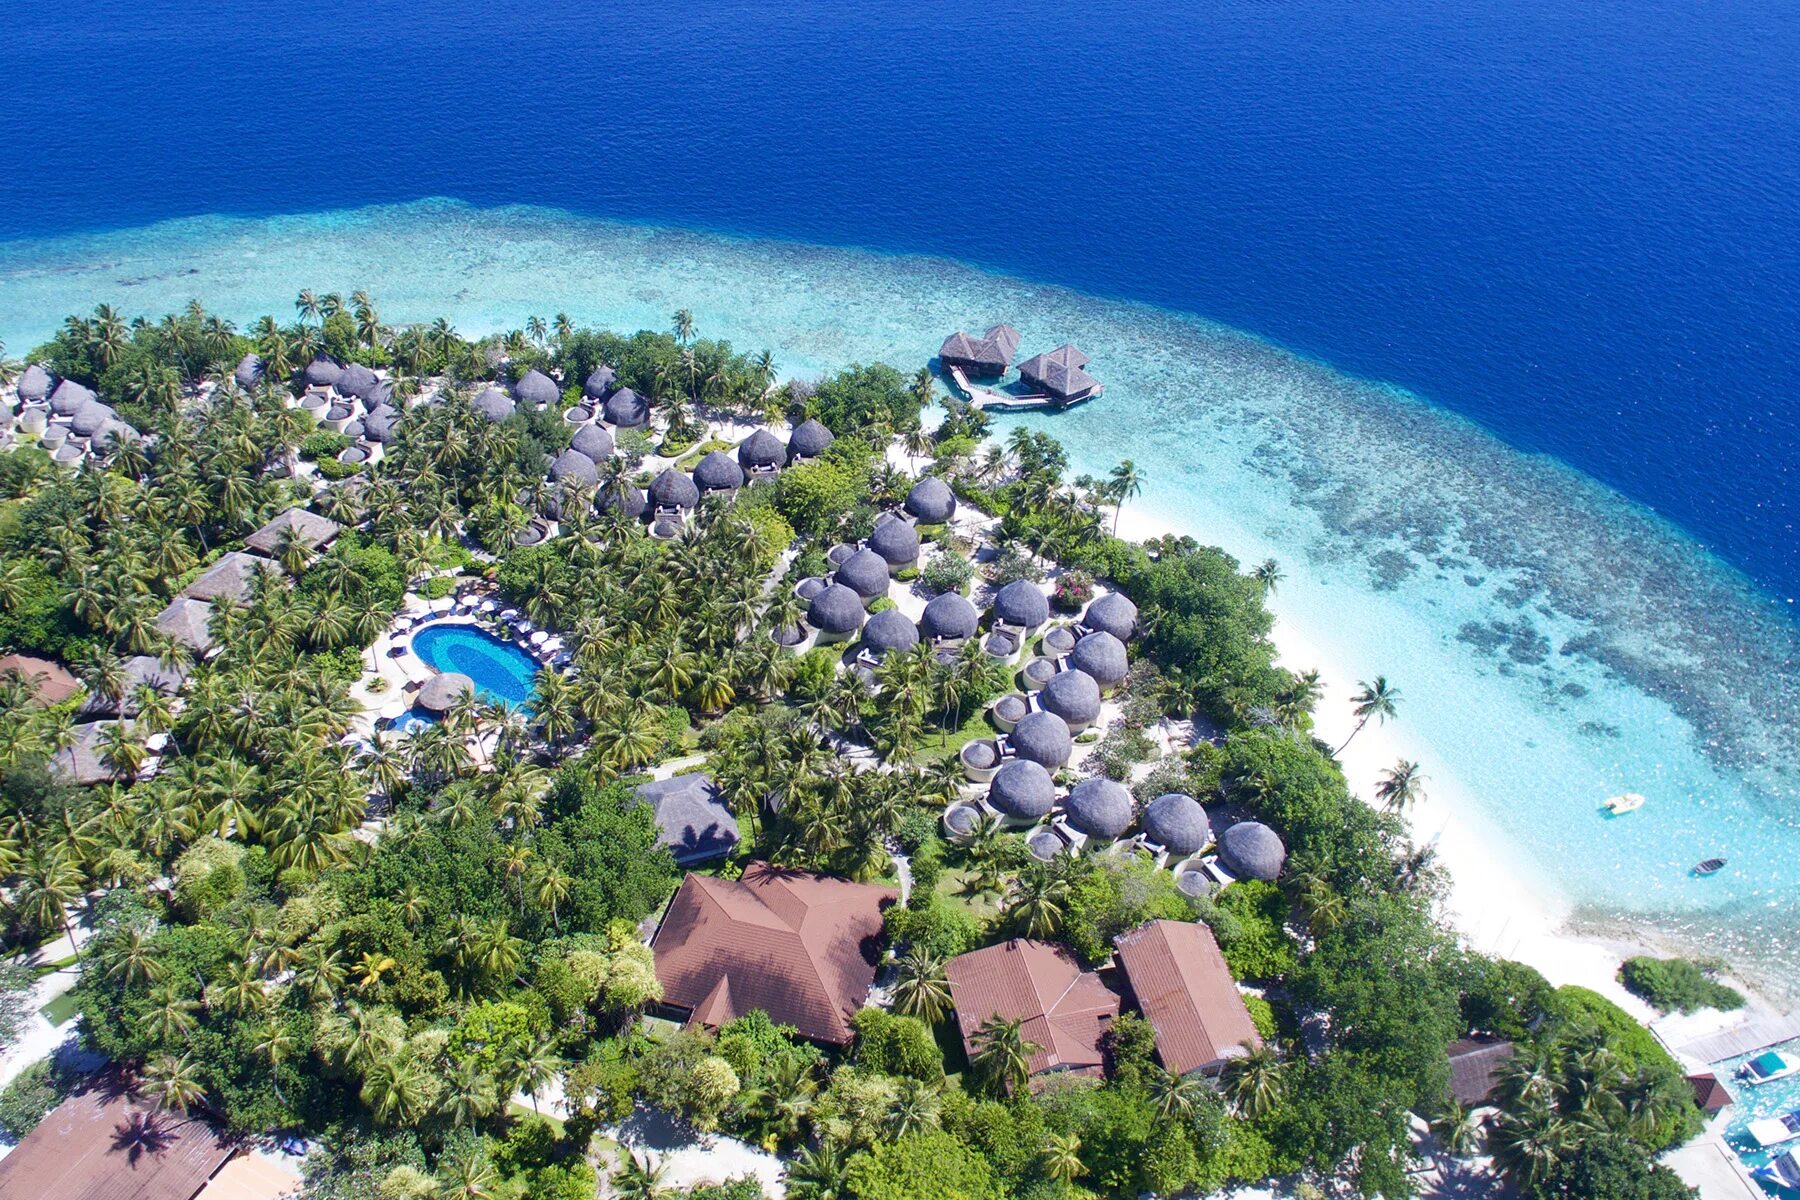 Отель Bandos Island Resort & Spa 4*. Остров Bandos Мальдивы. Bandos Maldives 4 Мальдивы. Bandos Maldives (ex. Bandos Island Resort) 4* Мальдивы,. Bandos island resort 4